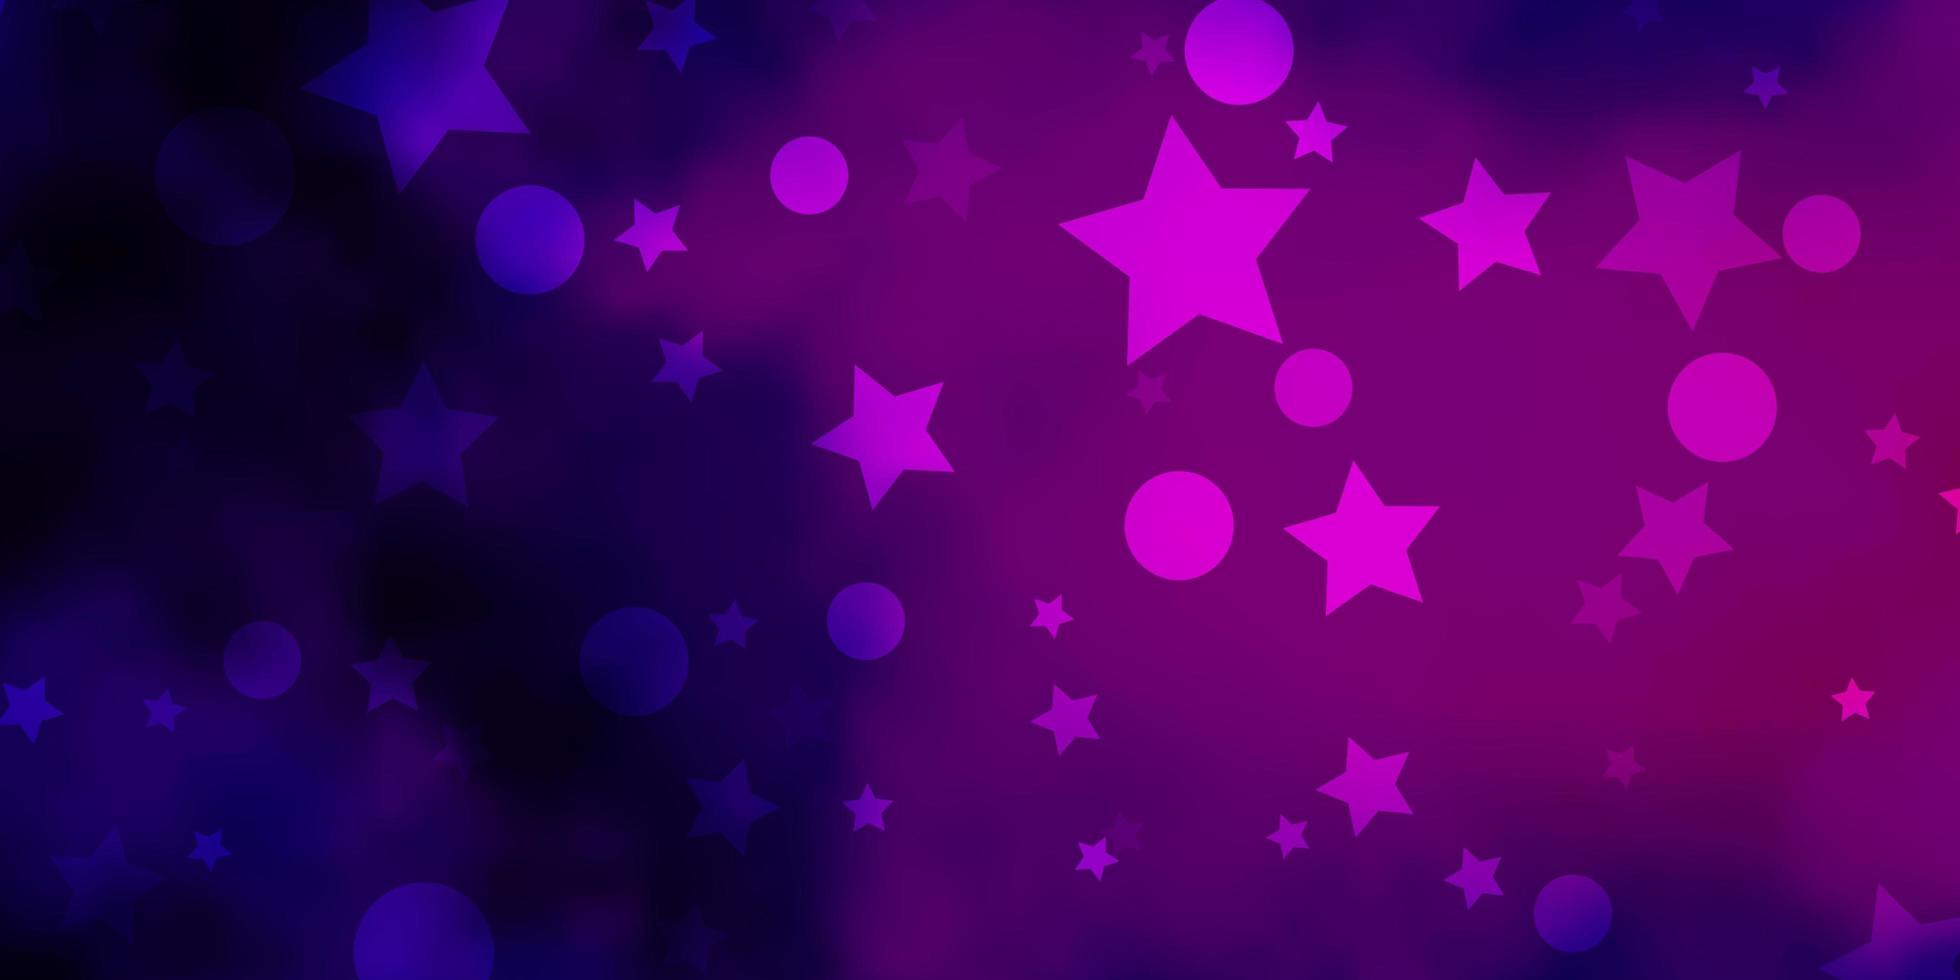 modèle vectoriel violet foncé avec des cercles, des étoiles. illustration abstraite de paillettes avec des gouttes colorées, des étoiles. texture pour stores, rideaux.